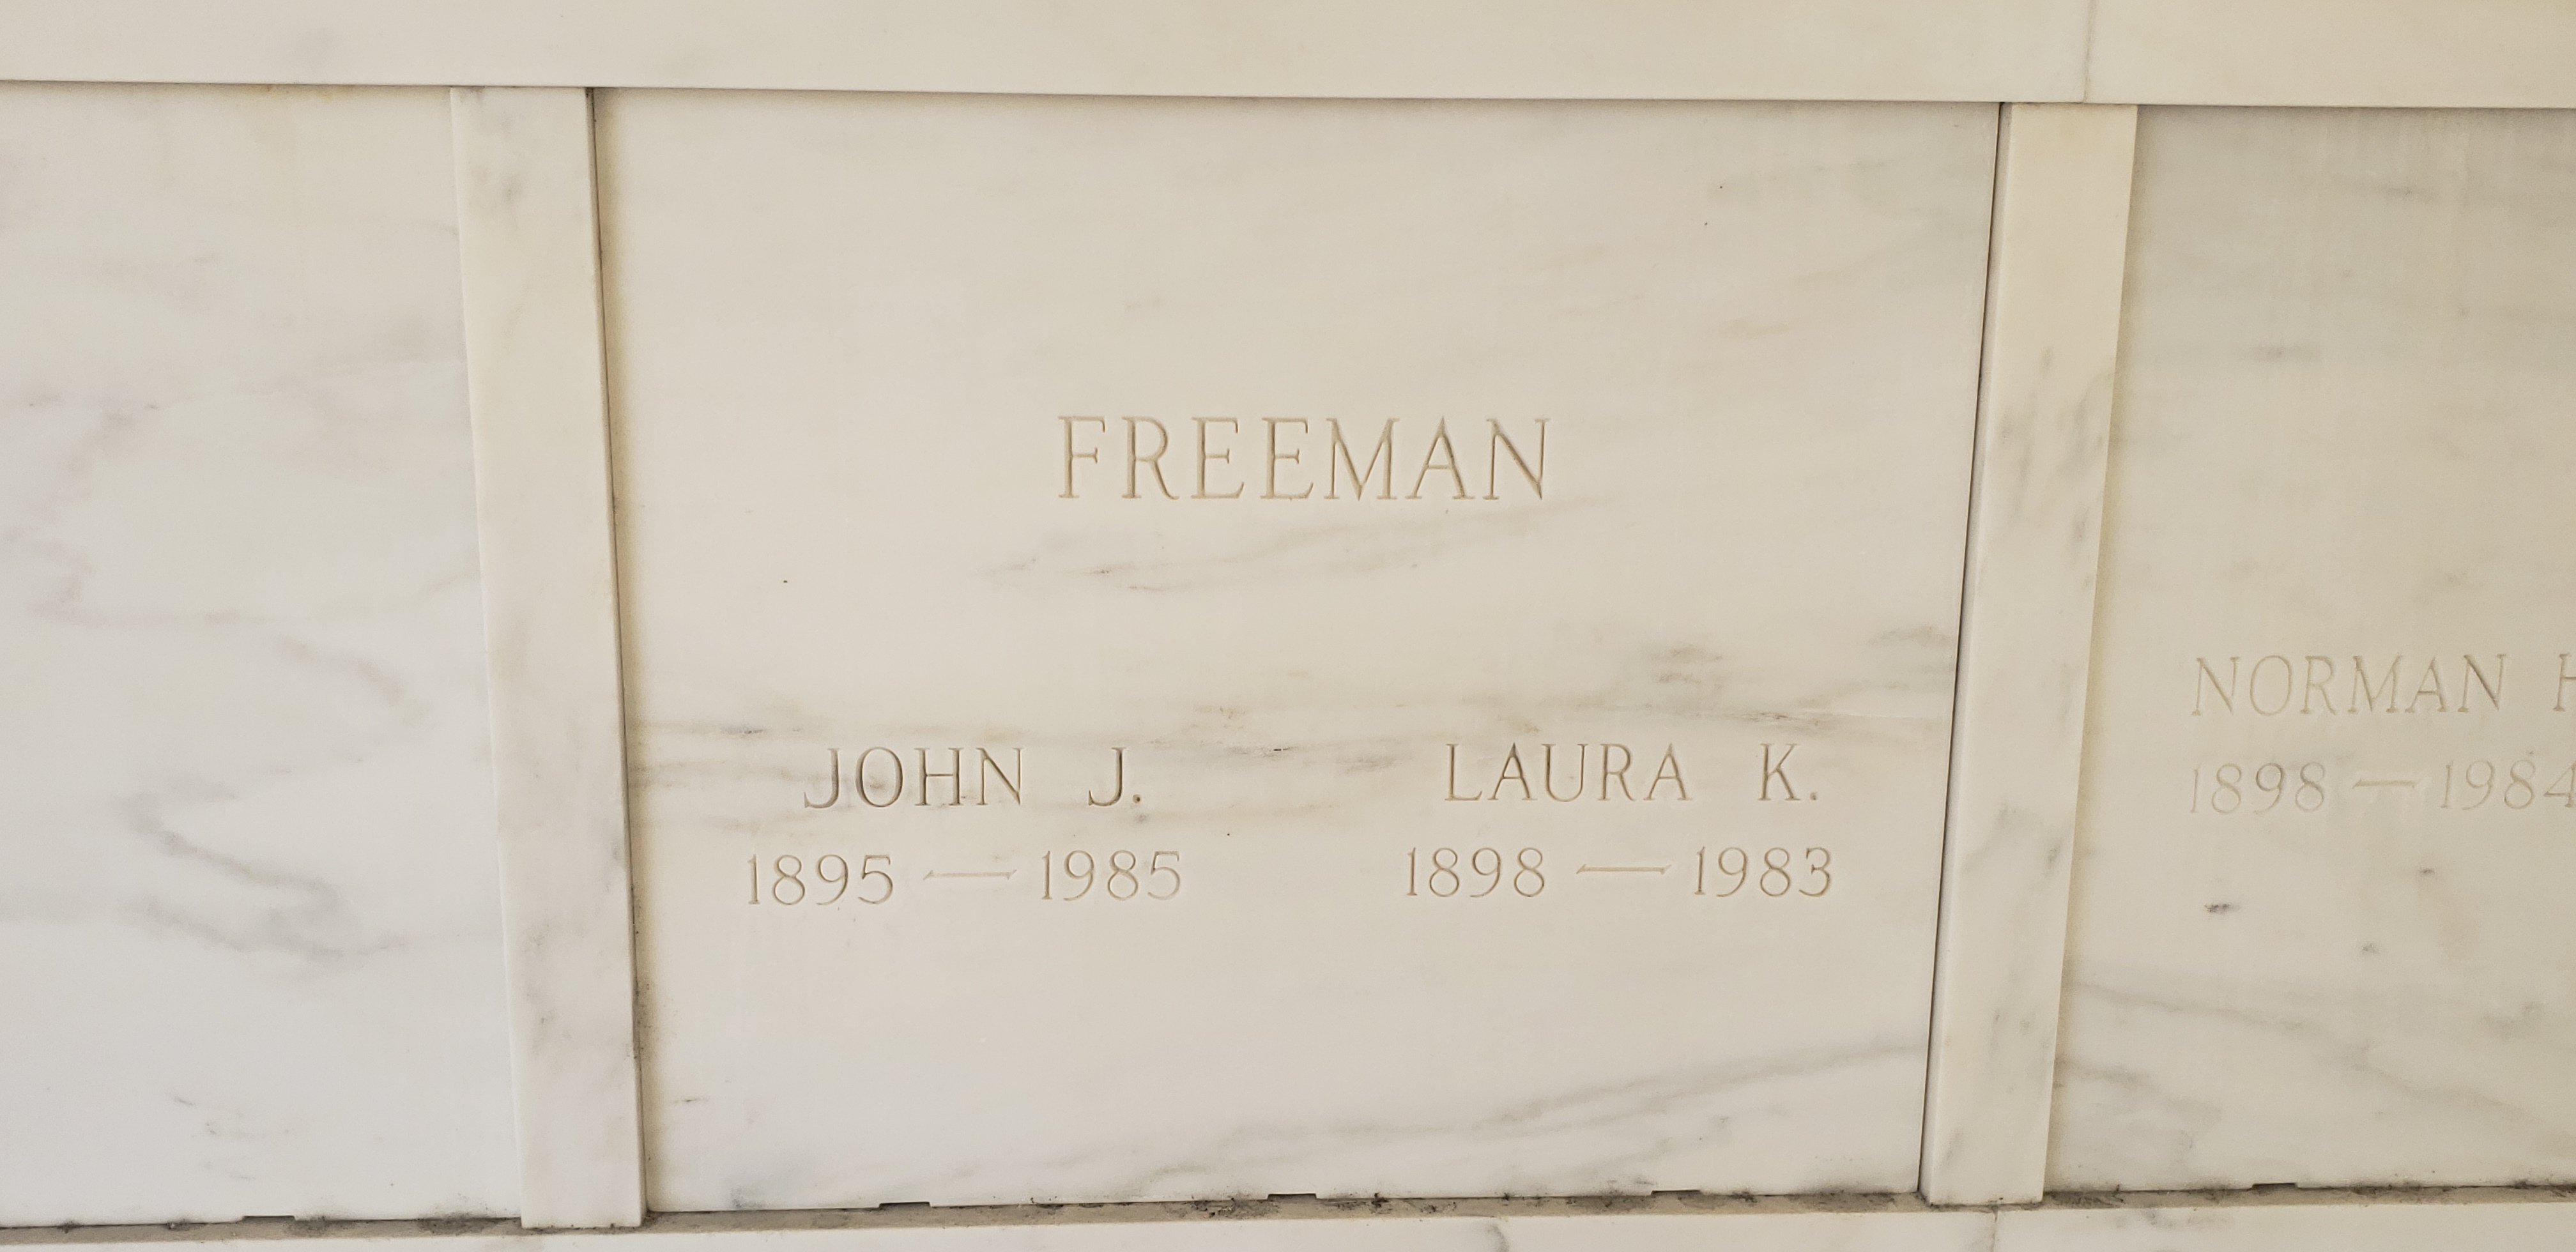 John J Freeman